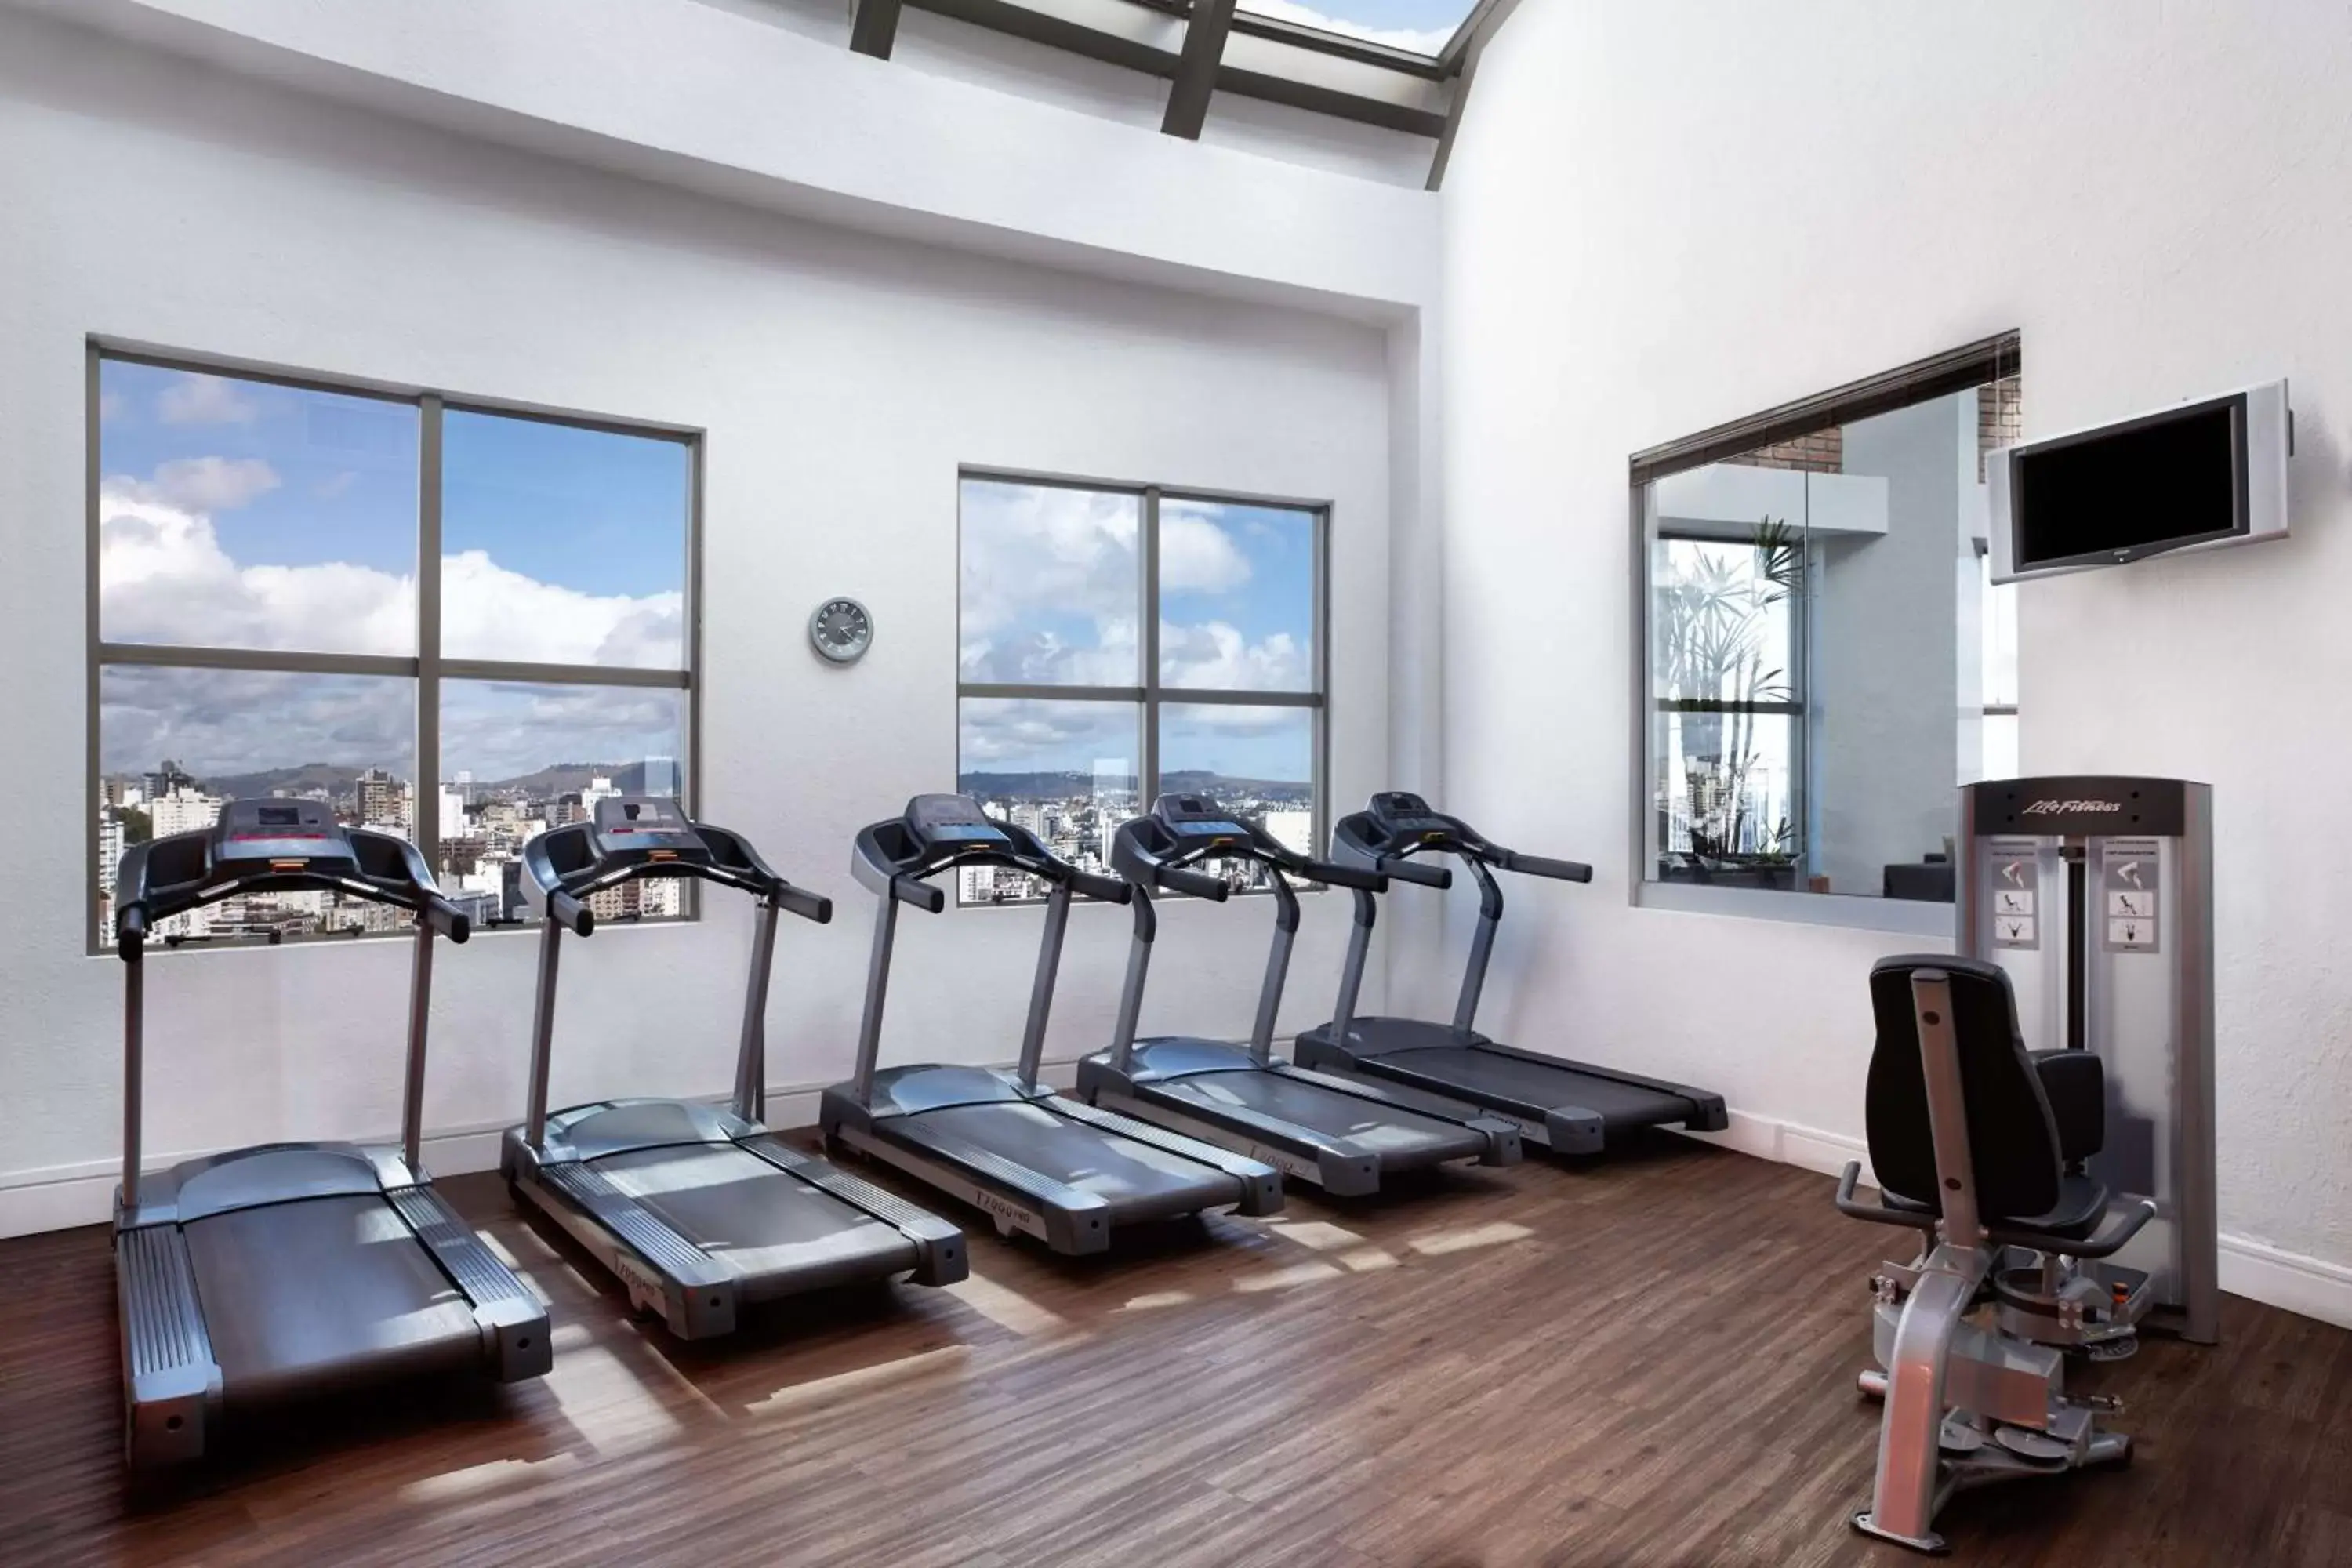 Fitness centre/facilities, Fitness Center/Facilities in Hilton Porto Alegre, Brazil